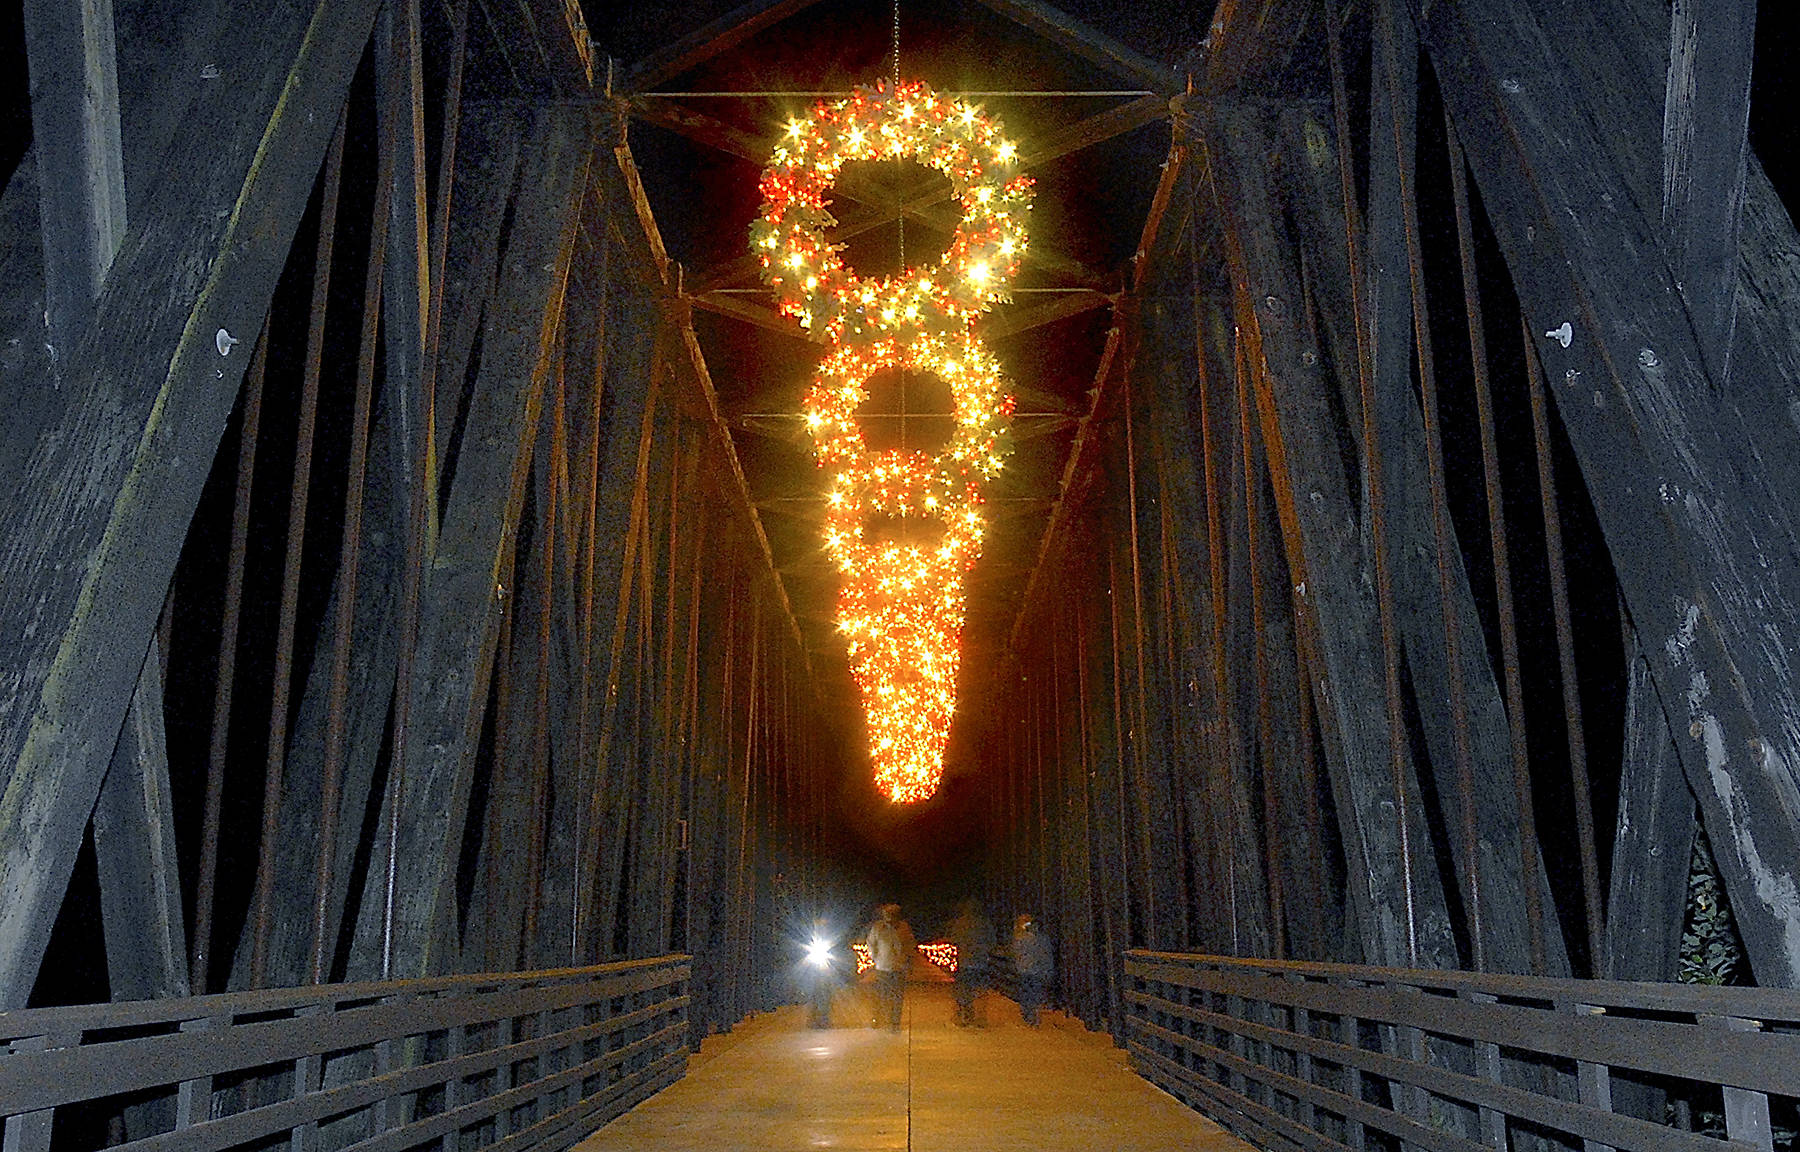 9921747_web1_171119-pdn-railroad-bridge-lights